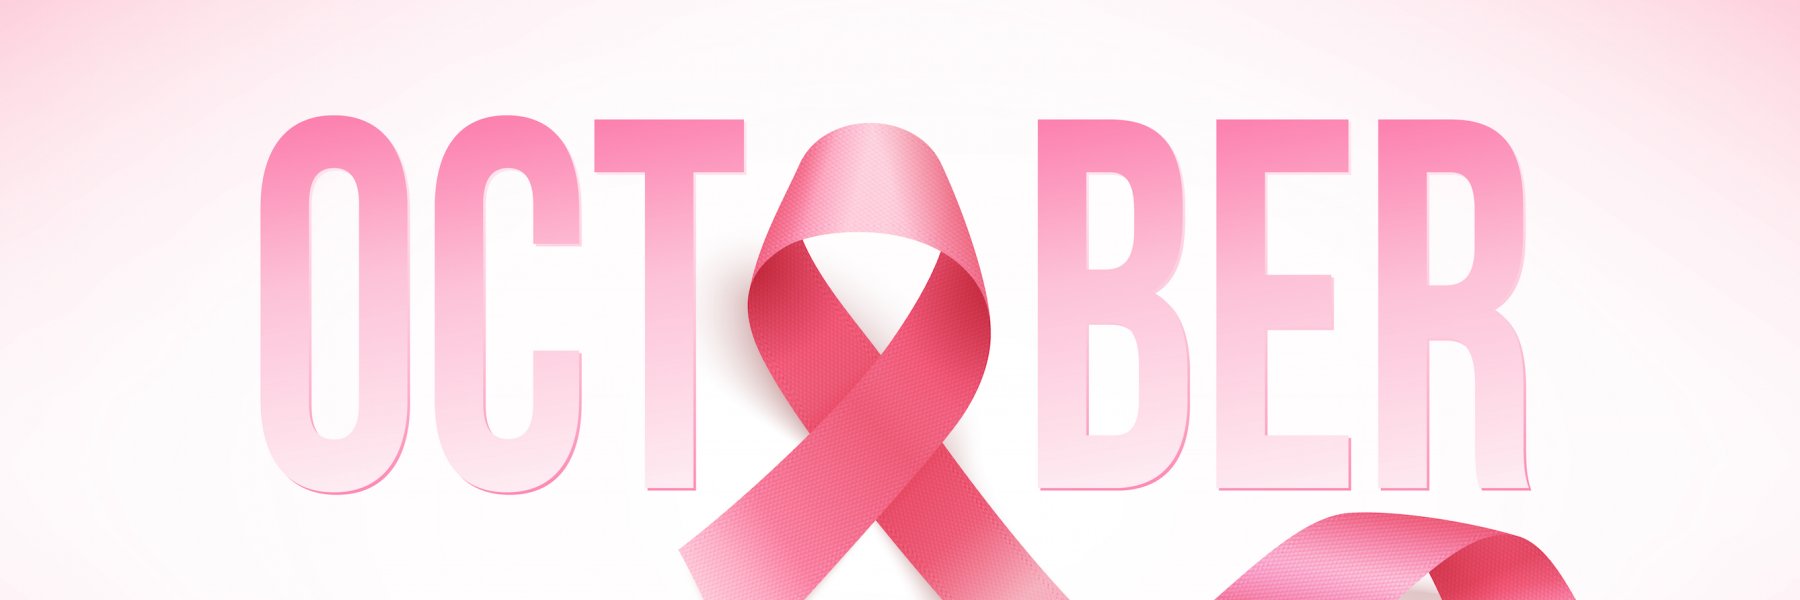 فايزر تطلق حملة " خذي خطوة" لدعم مرضى سرطان الثدي على مستوى منطقة الشرق الأوسط وأفريقيا